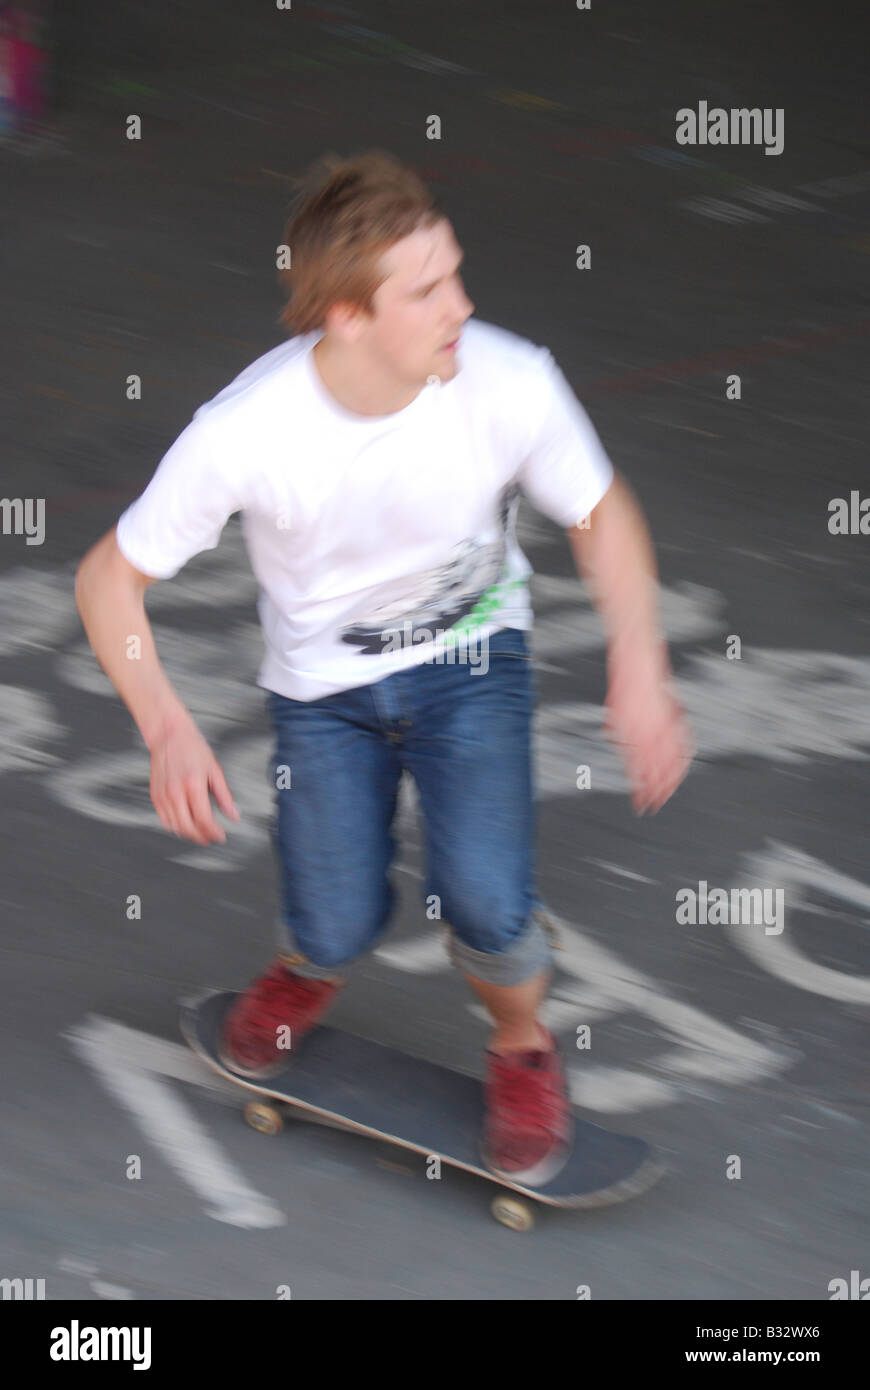 Skateboard tricks formatori urban sporcizia interna della città di sfocatura di velocità Foto Stock